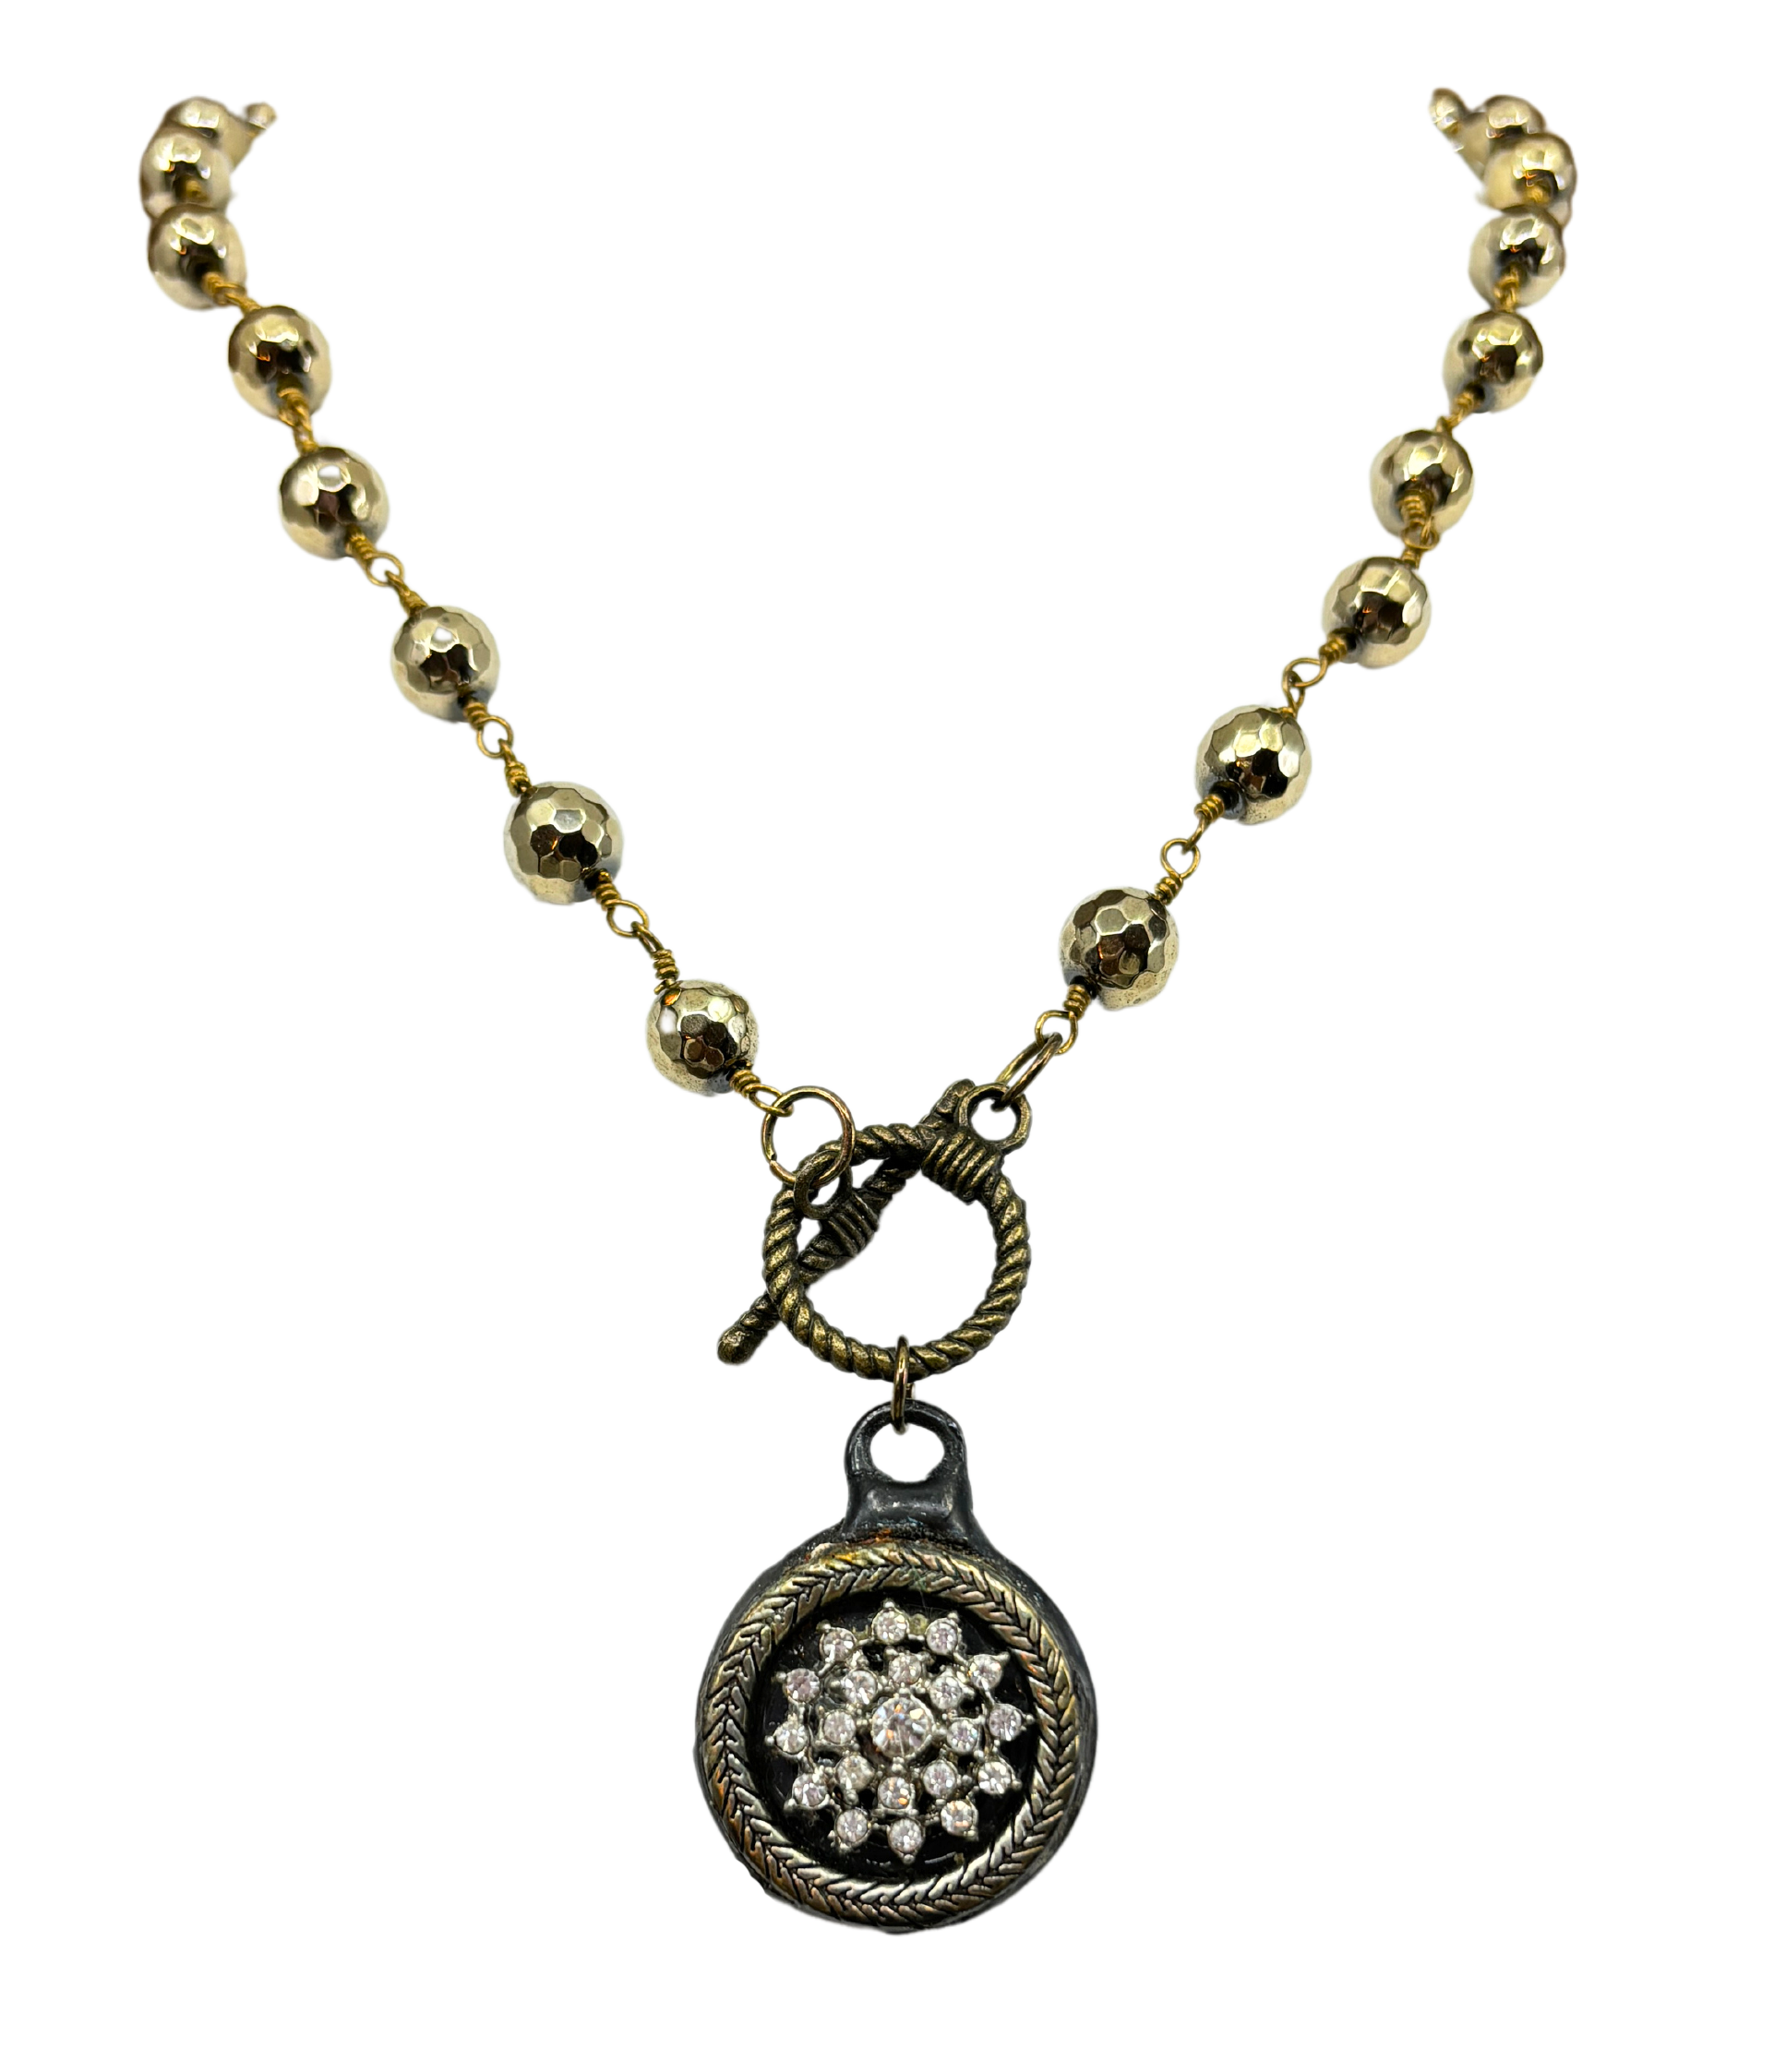 Rhinestone Soldered & Gold Hematite Necklace